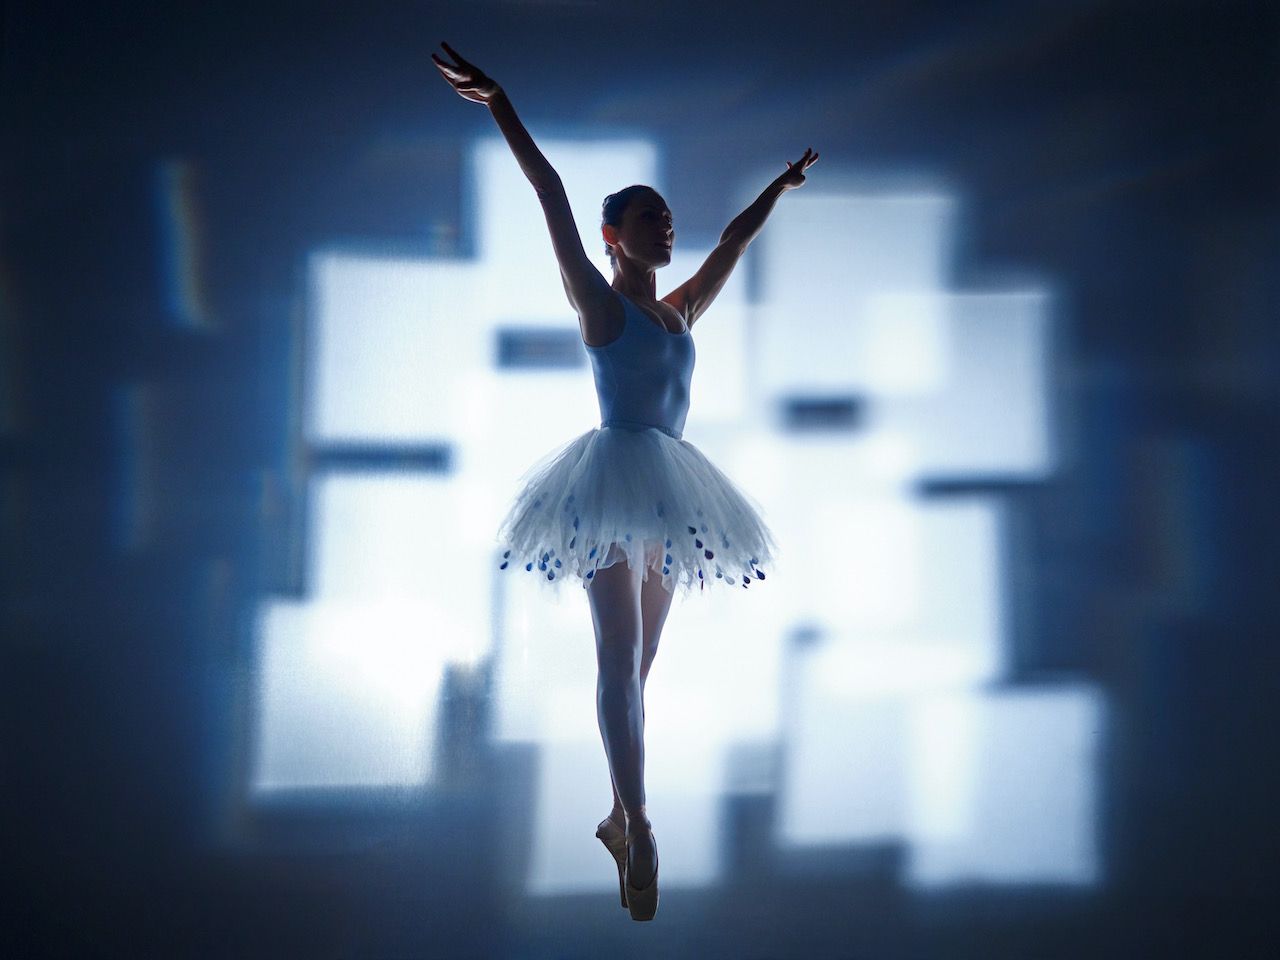 Michael Haegele abstrakte Fotografie Silhouette Ballerina im Tütü mit leuchtenden überlappenden Quadraten im Hintergrund